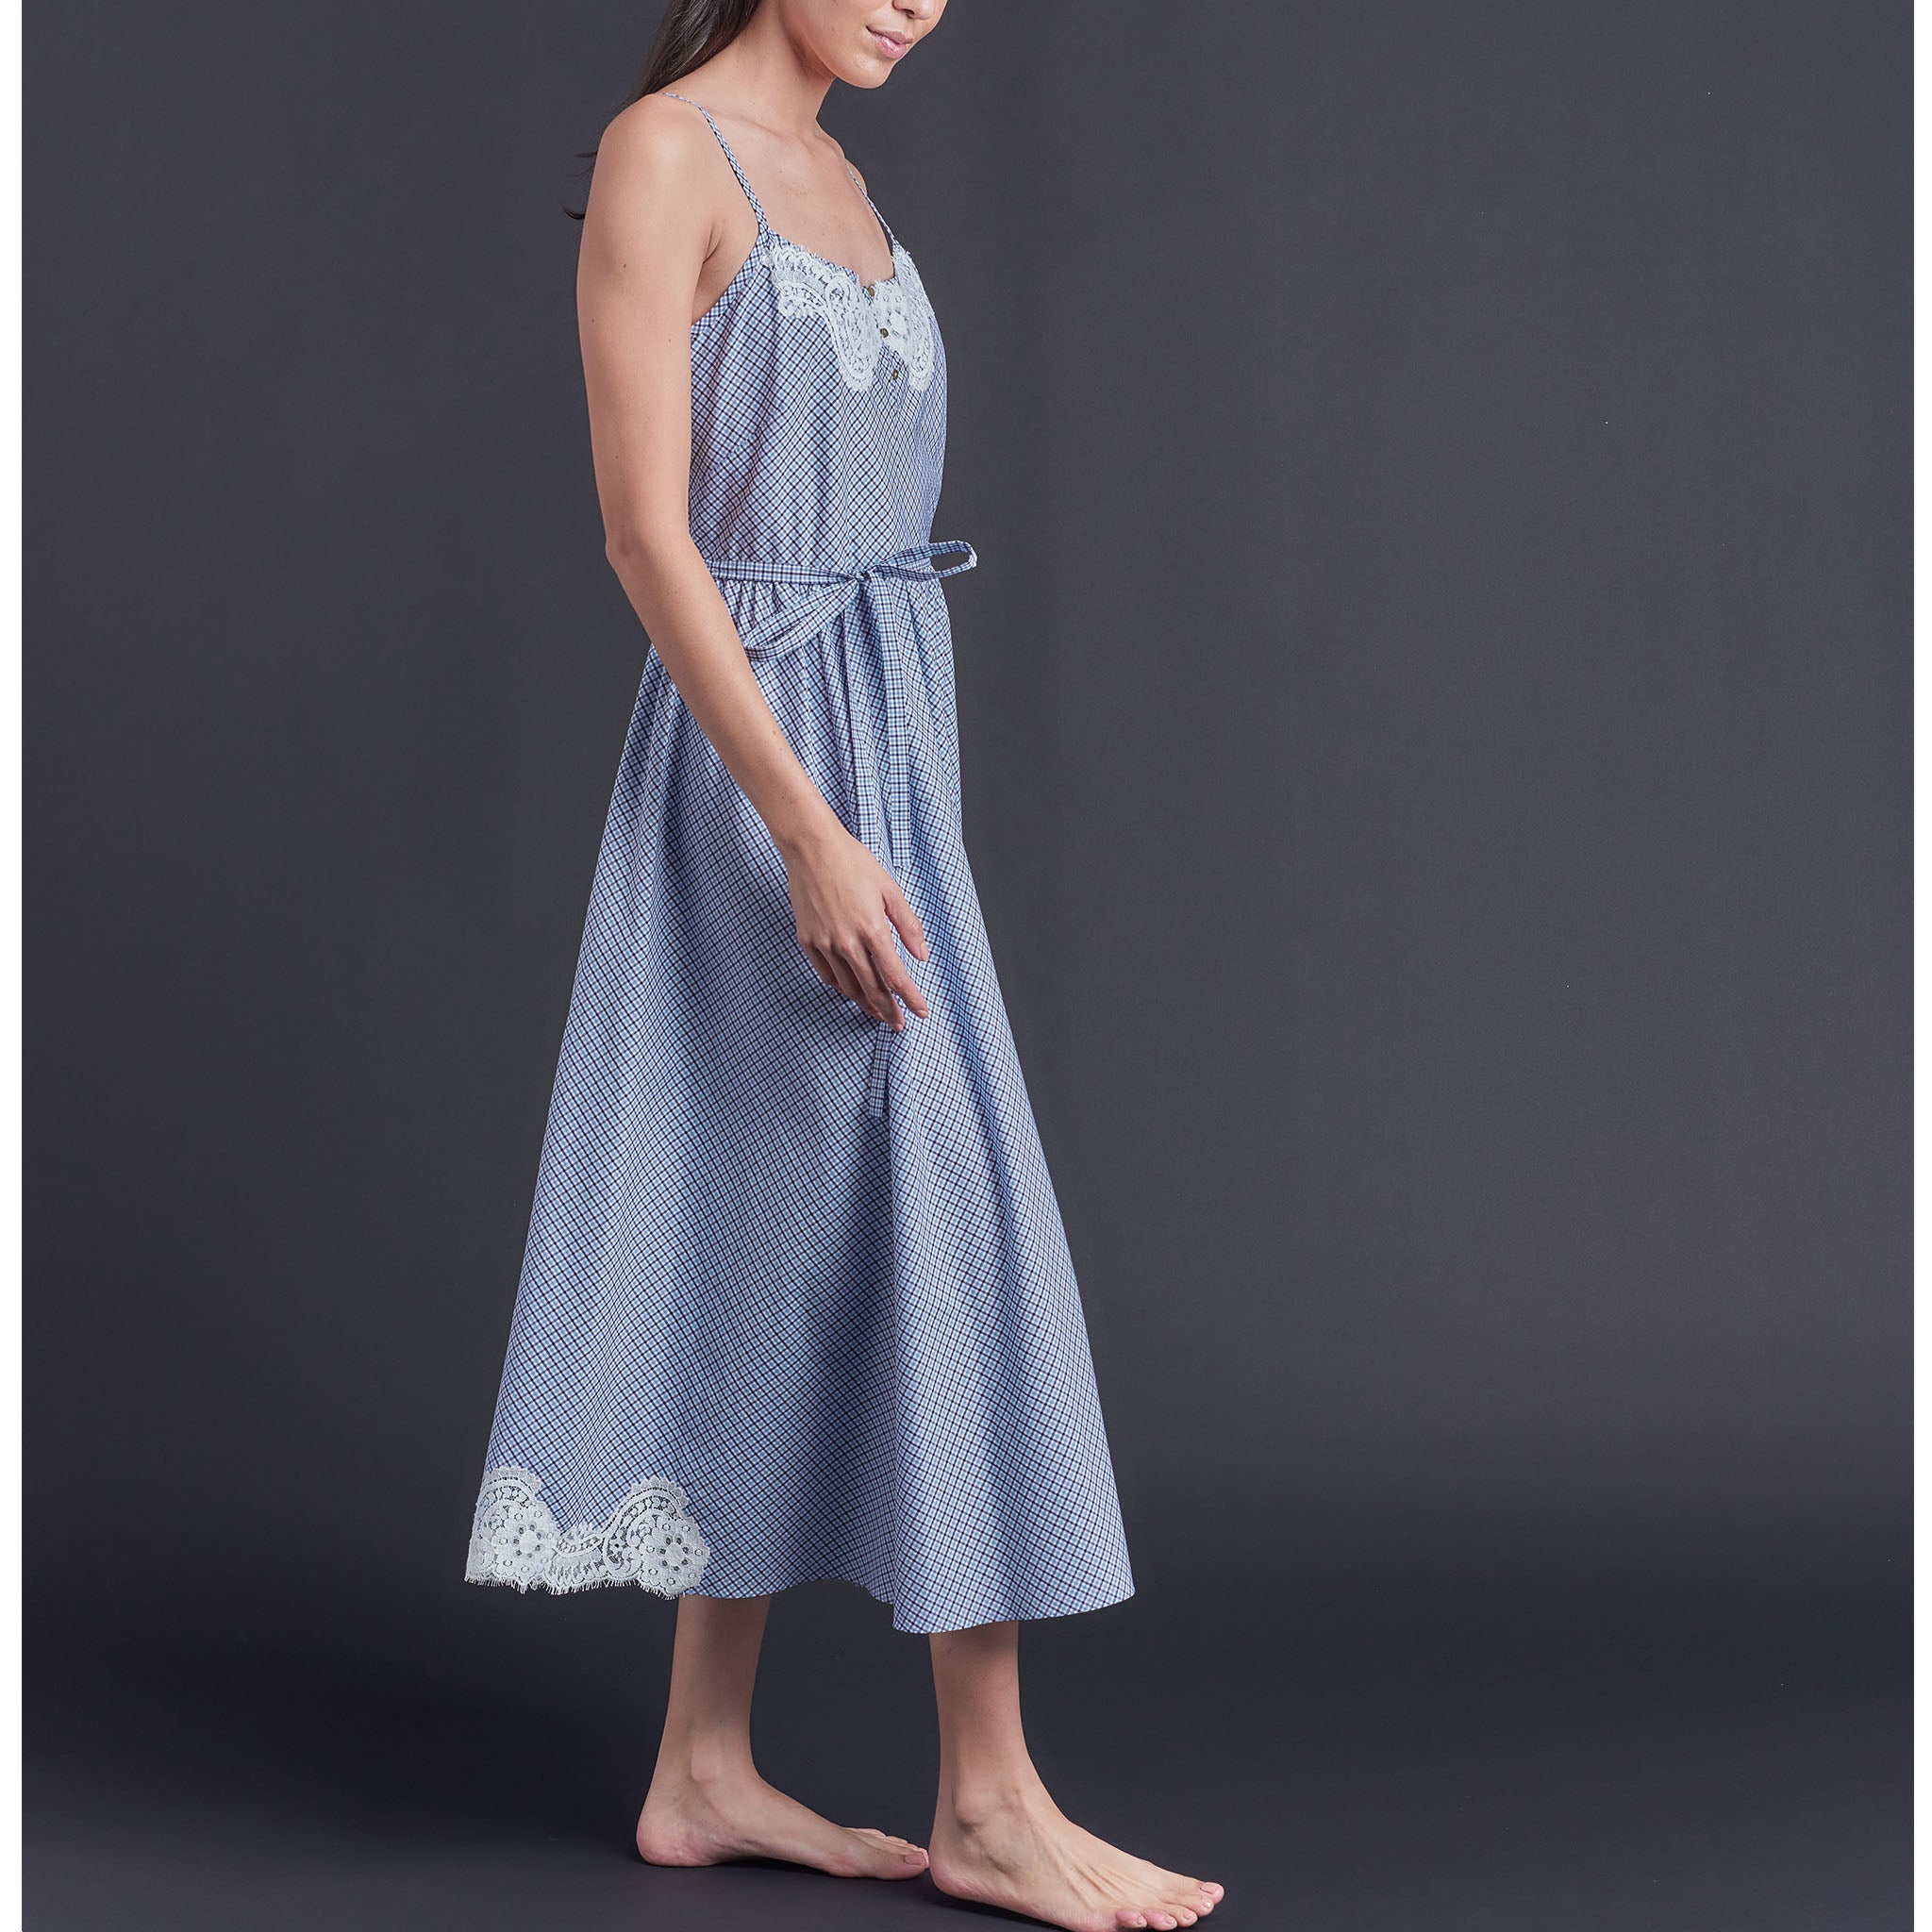 Lilia Slip Dress in Blue Check Italian Cotton